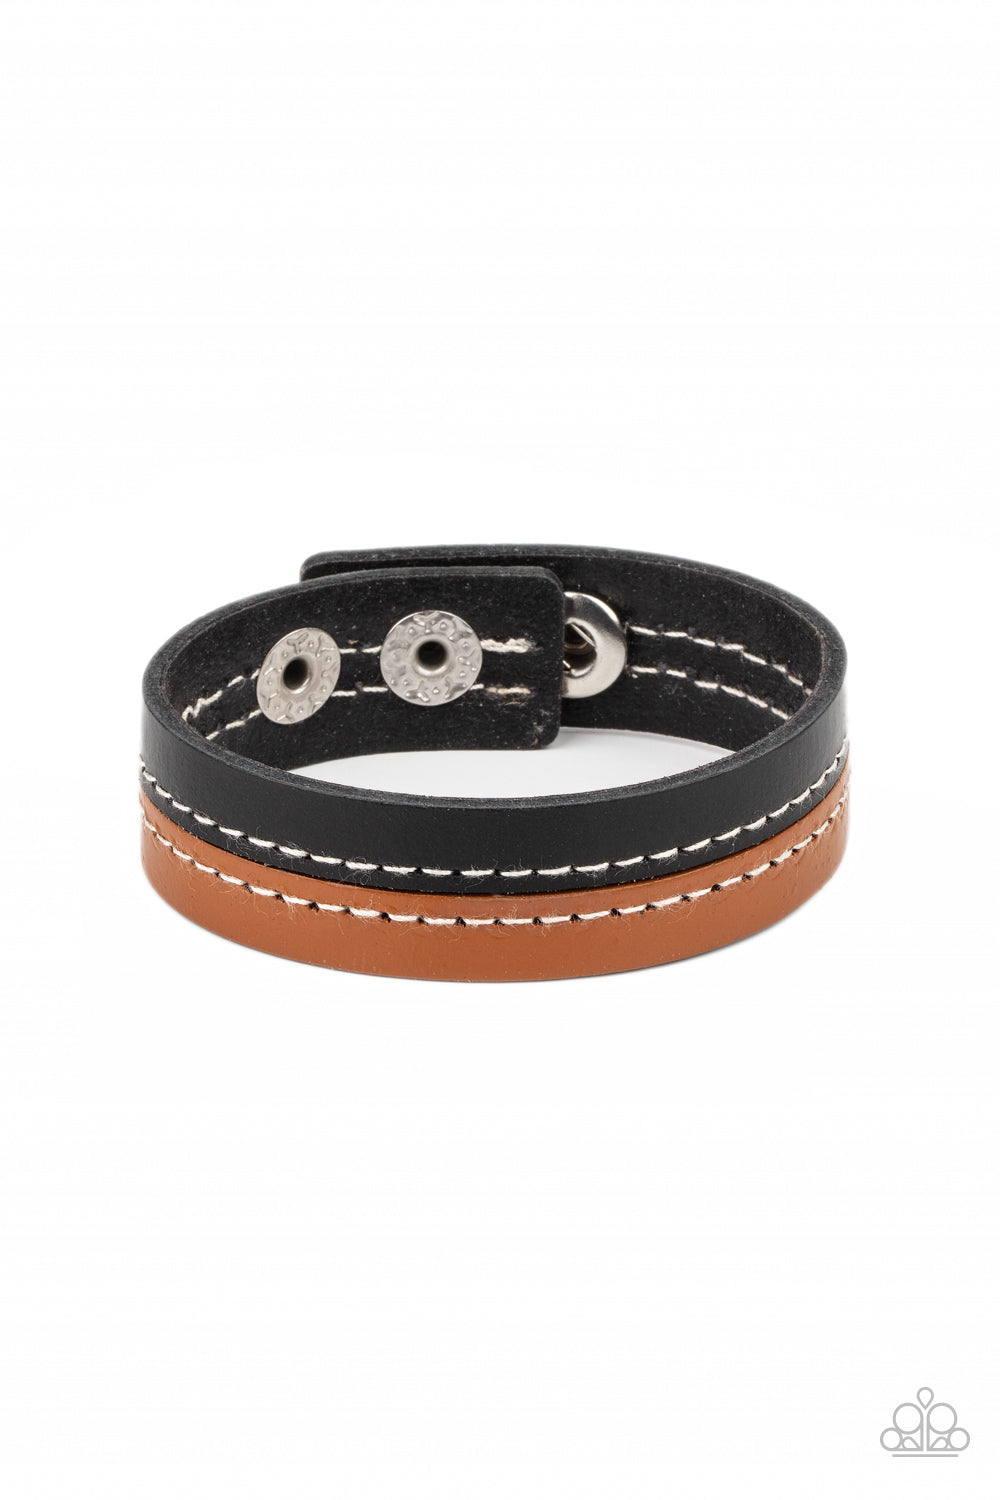 Simply Safari - Black and Tan Bracelet